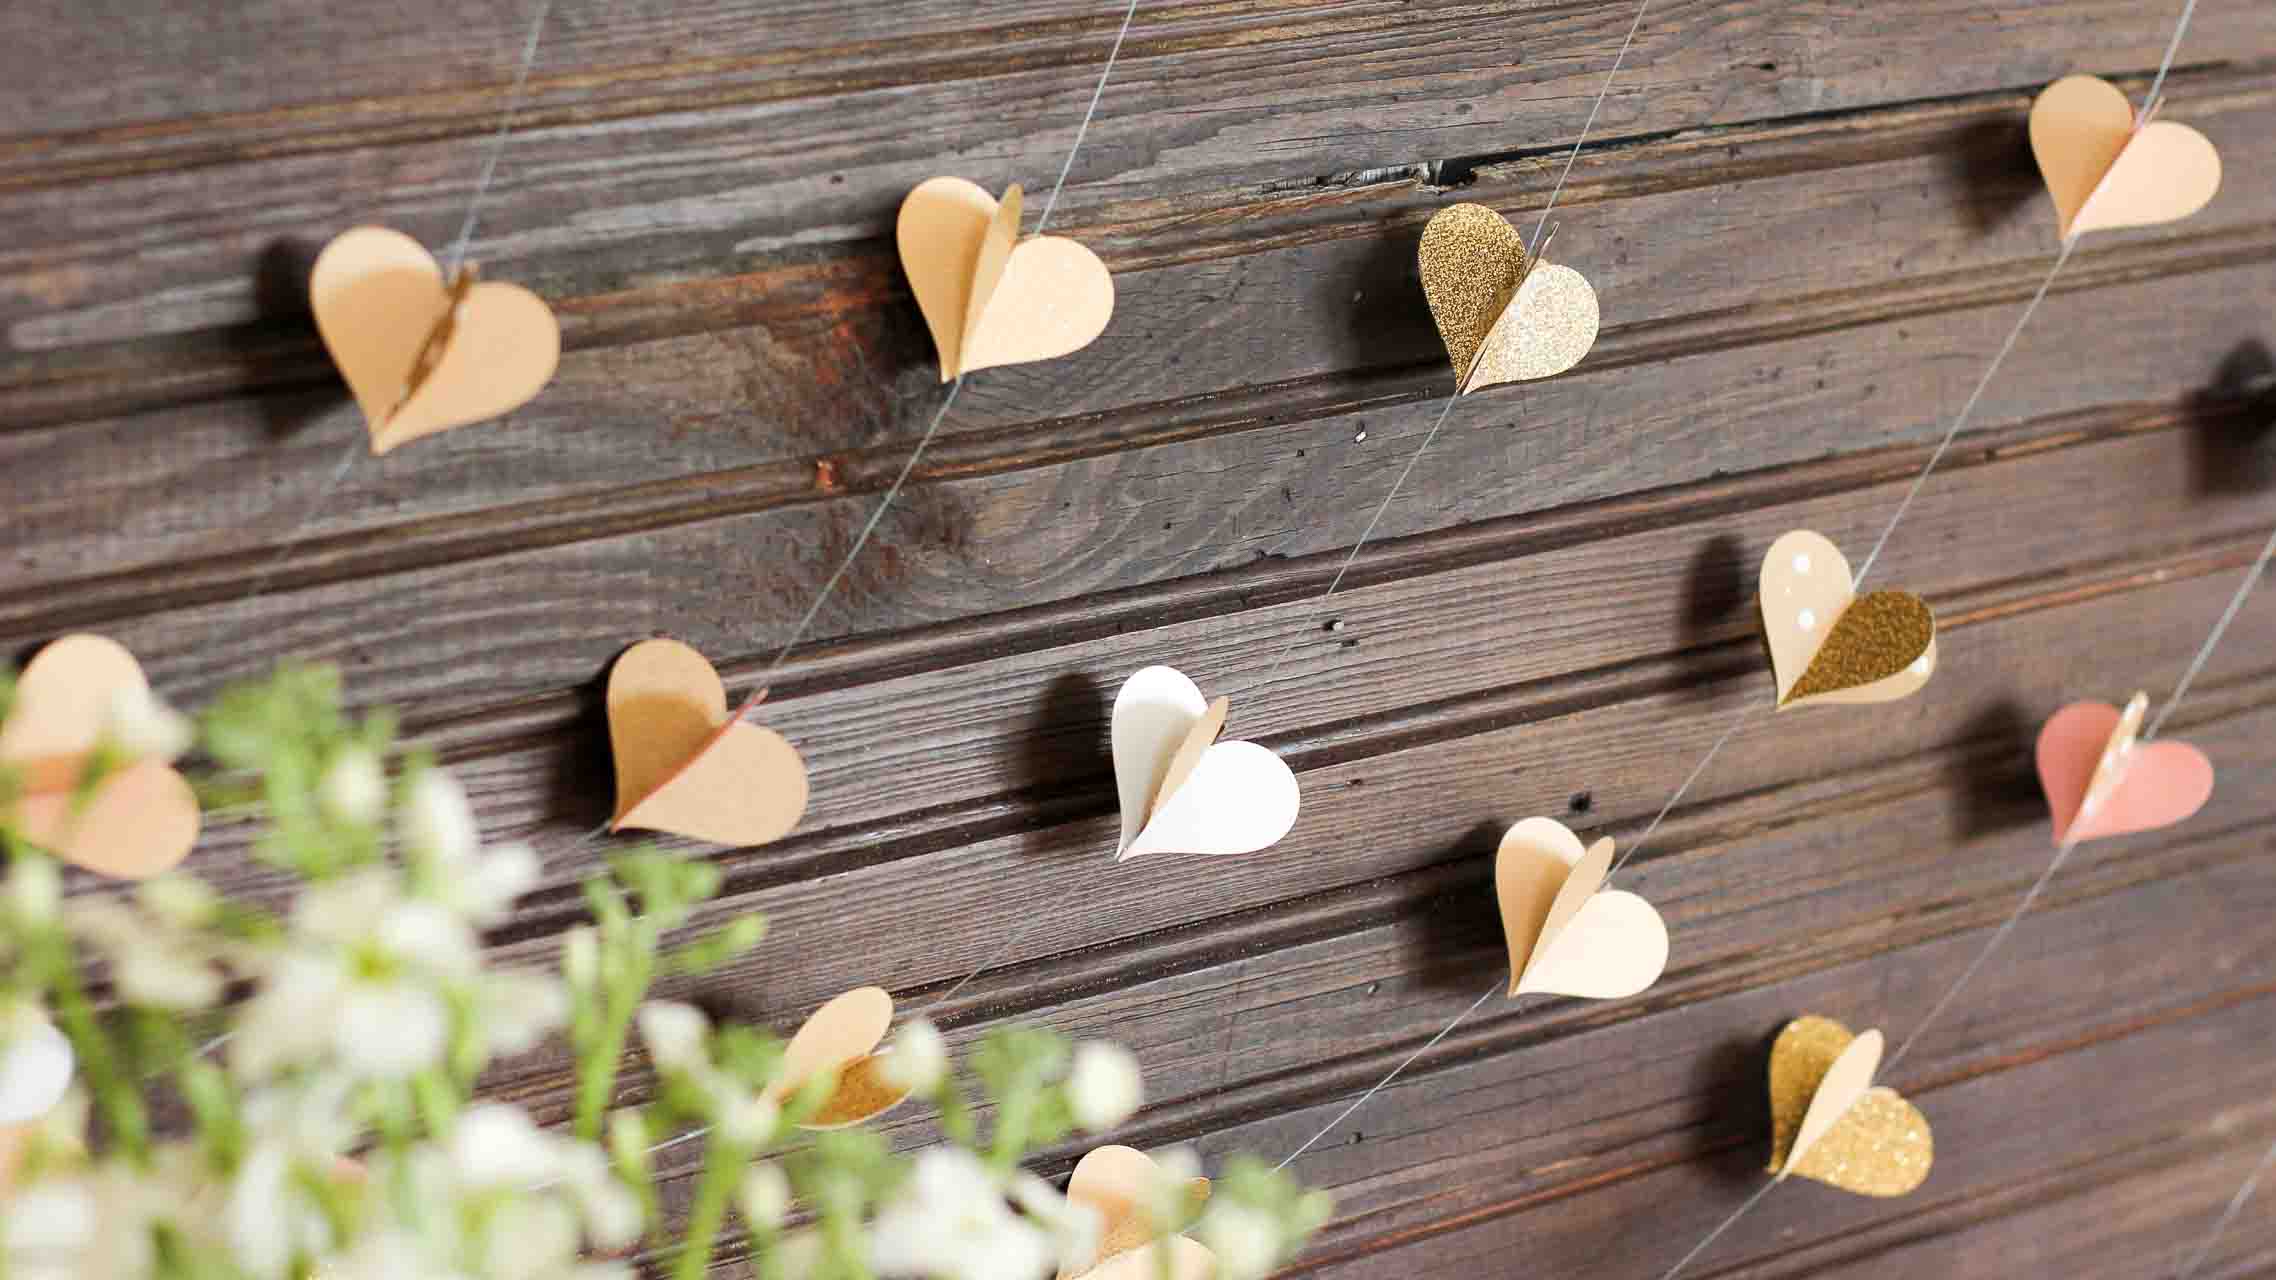 Гирлянду из сердечек можно с легкостью использовать не только для украшения зала на Новый год, но и при подготовке праздника ко Дню влюбленных, или на свадебное торжество